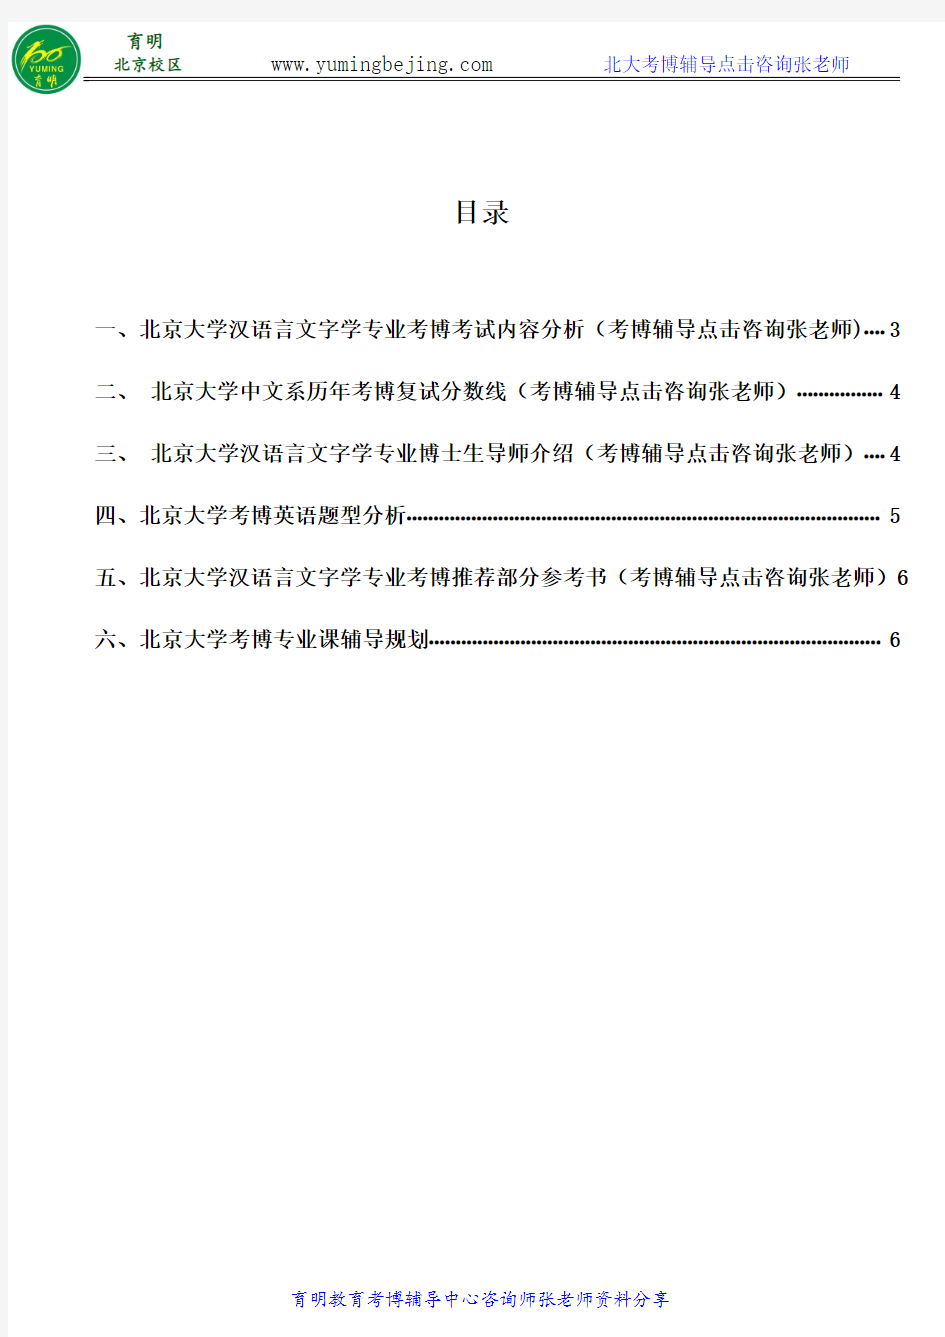 2018年北京大学汉语言文字学专业考博参考书、考博真题、复习资料、考试重点